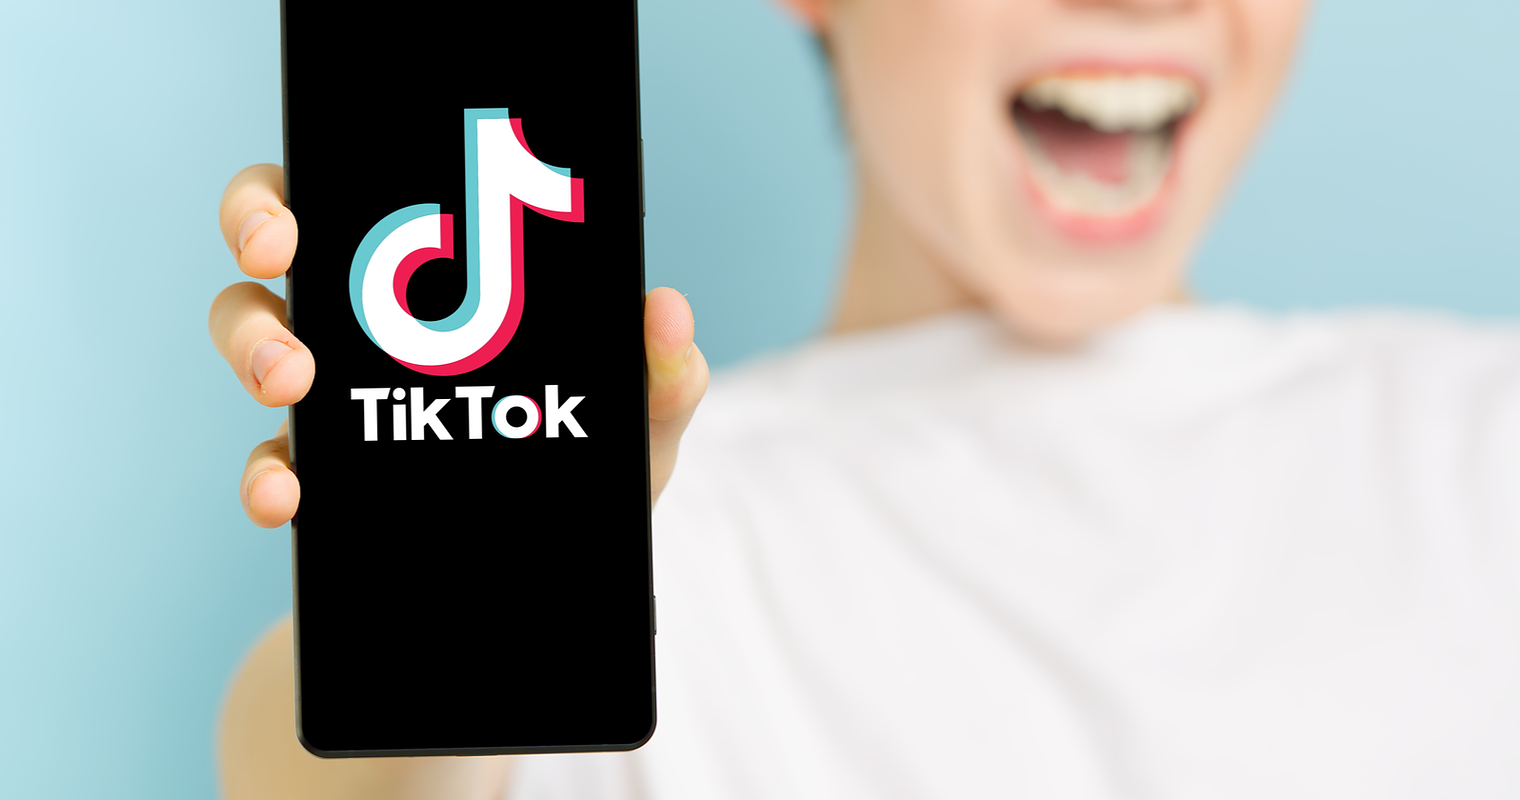 TikTok 推出品牌使命，众包创意的新方式